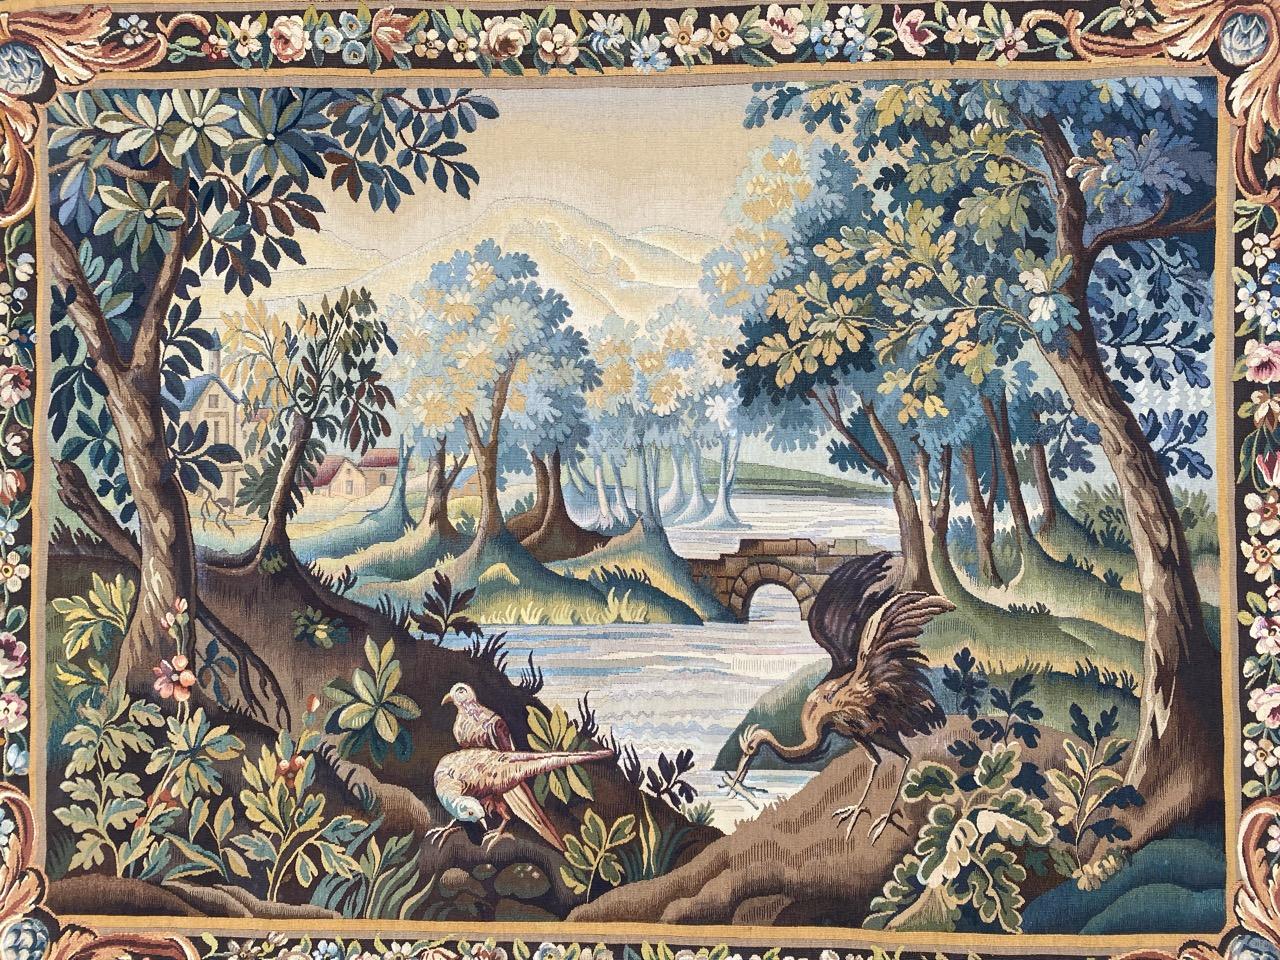 Merveilleuse tapisserie d'Aubusson du milieu du siècle dernier avec un magnifique motif de nature avec des oiseaux et de belles couleurs naturelles, entièrement tissée à la main avec de la laine.

✨✨✨
